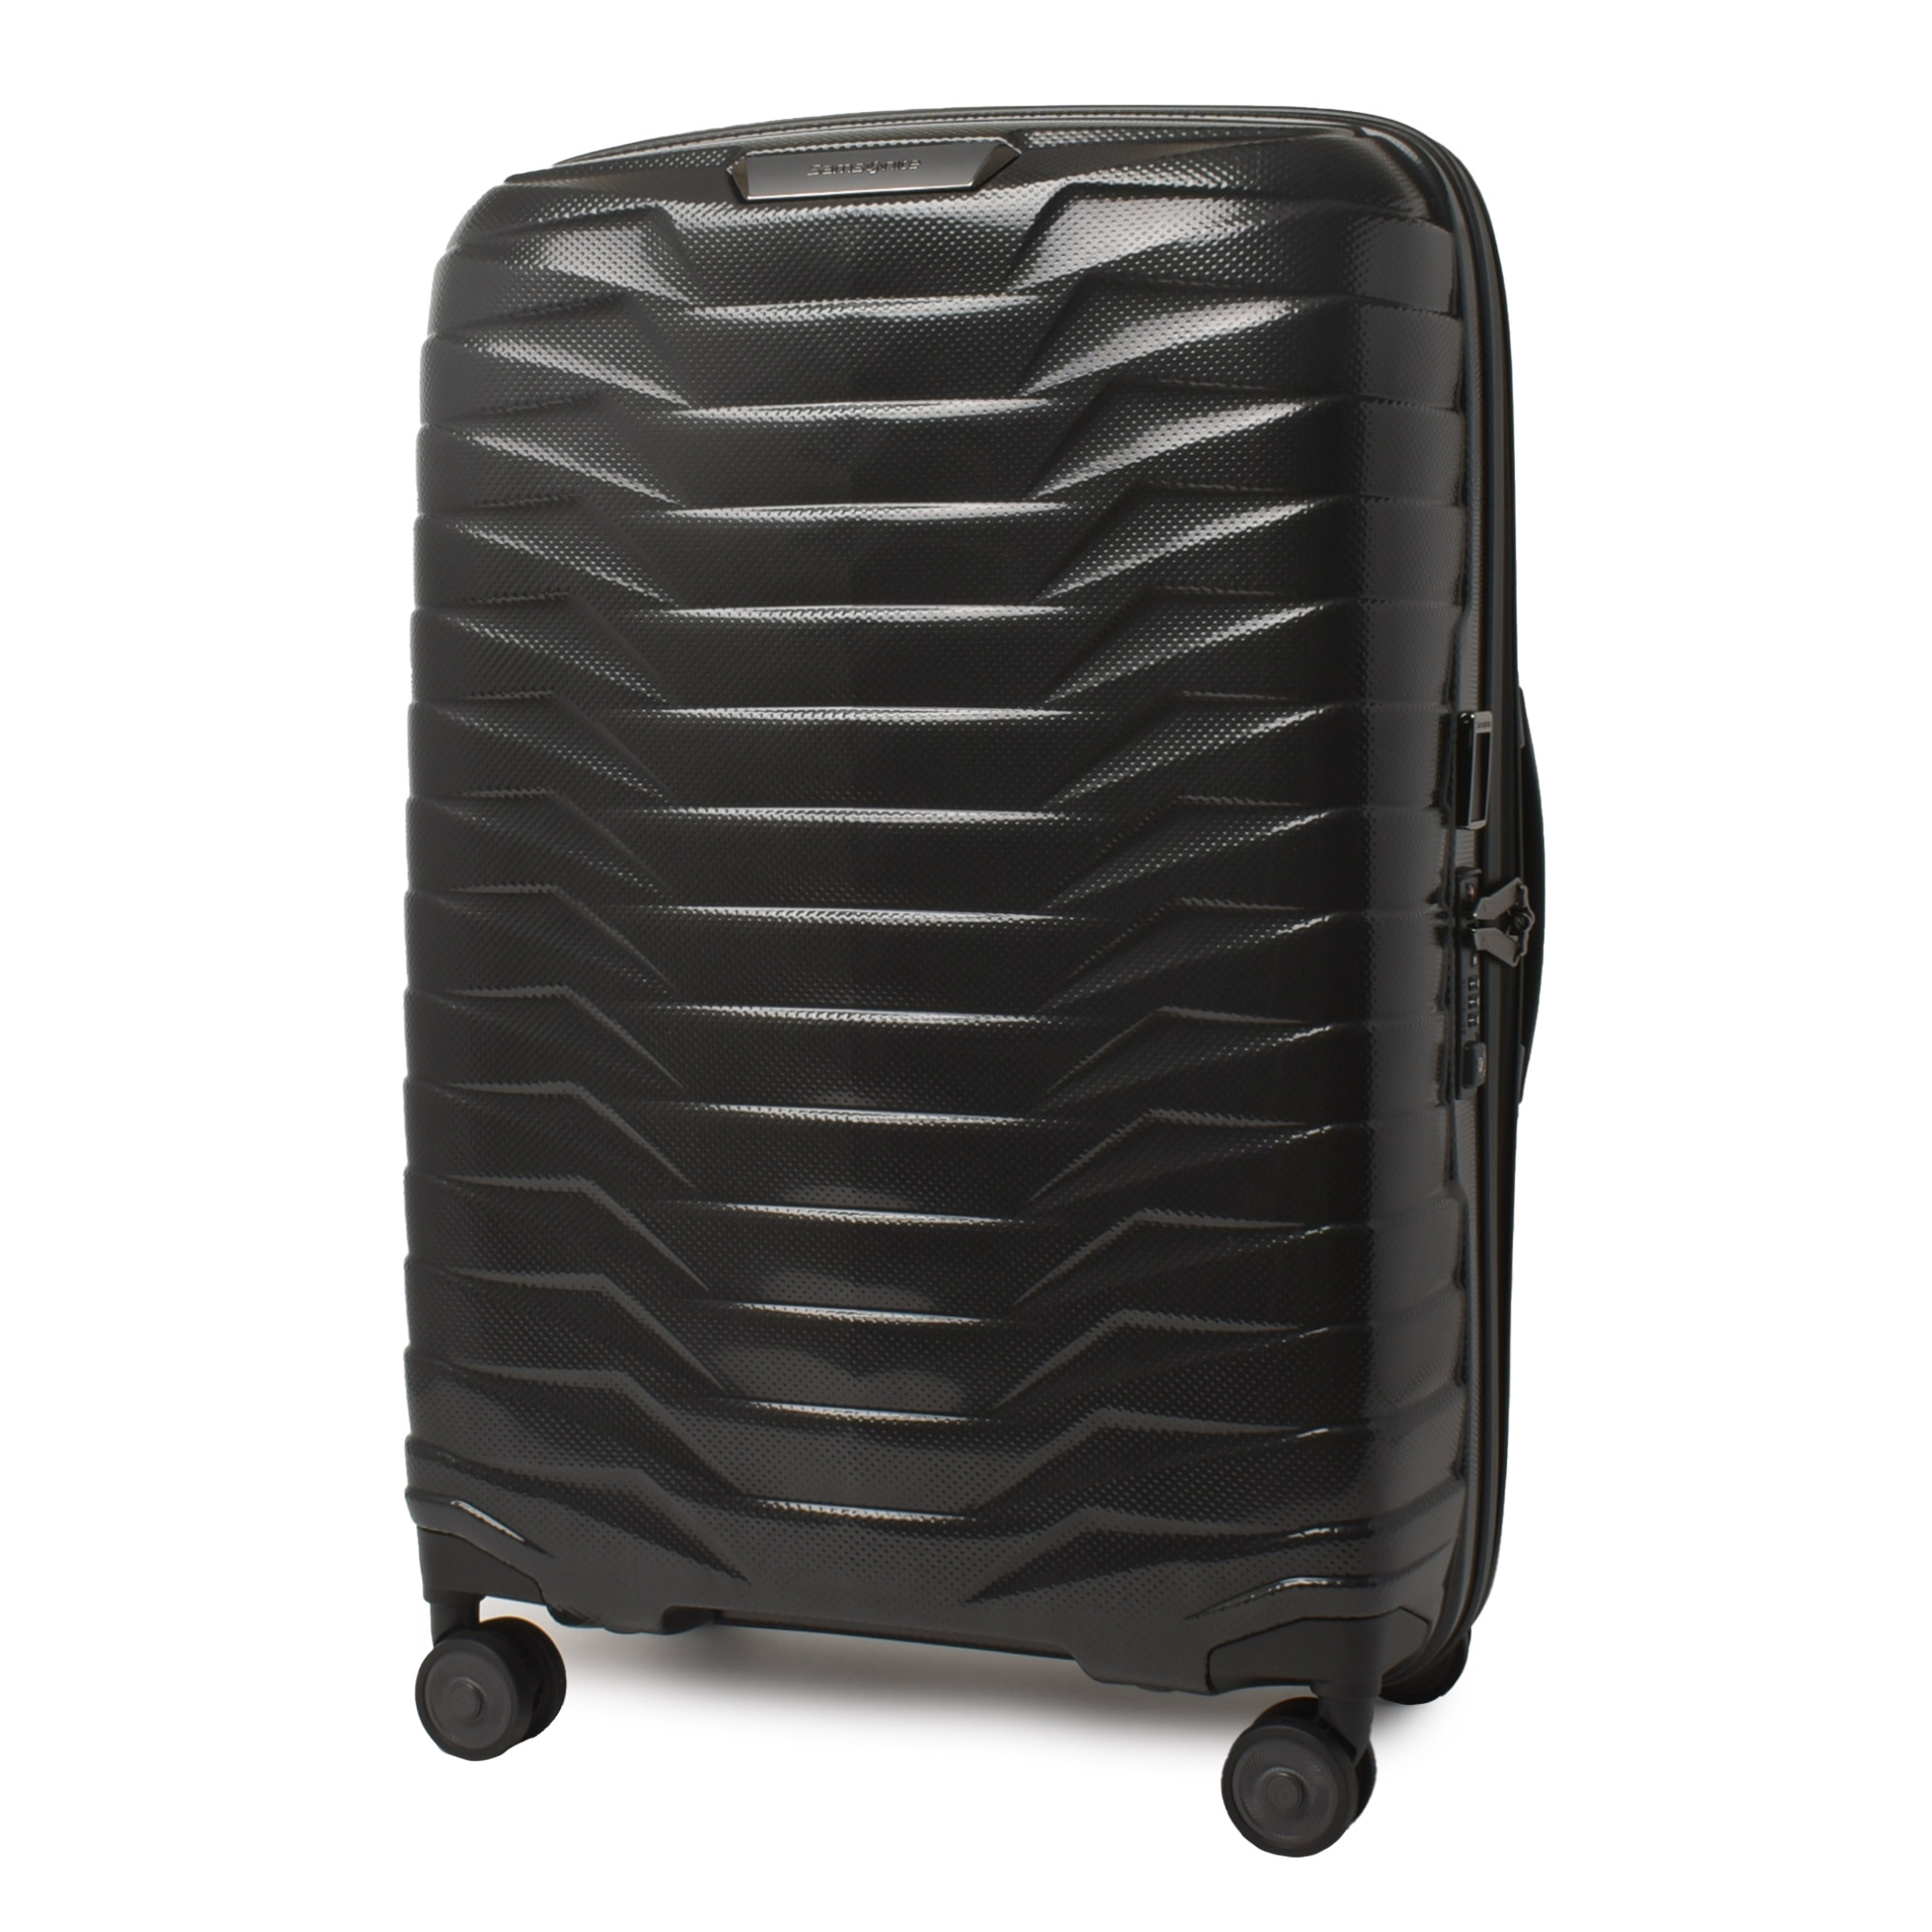 サムソナイト スーツケース メンズ レディース SAMSONITE 126041 ブラック 黒 ブル...